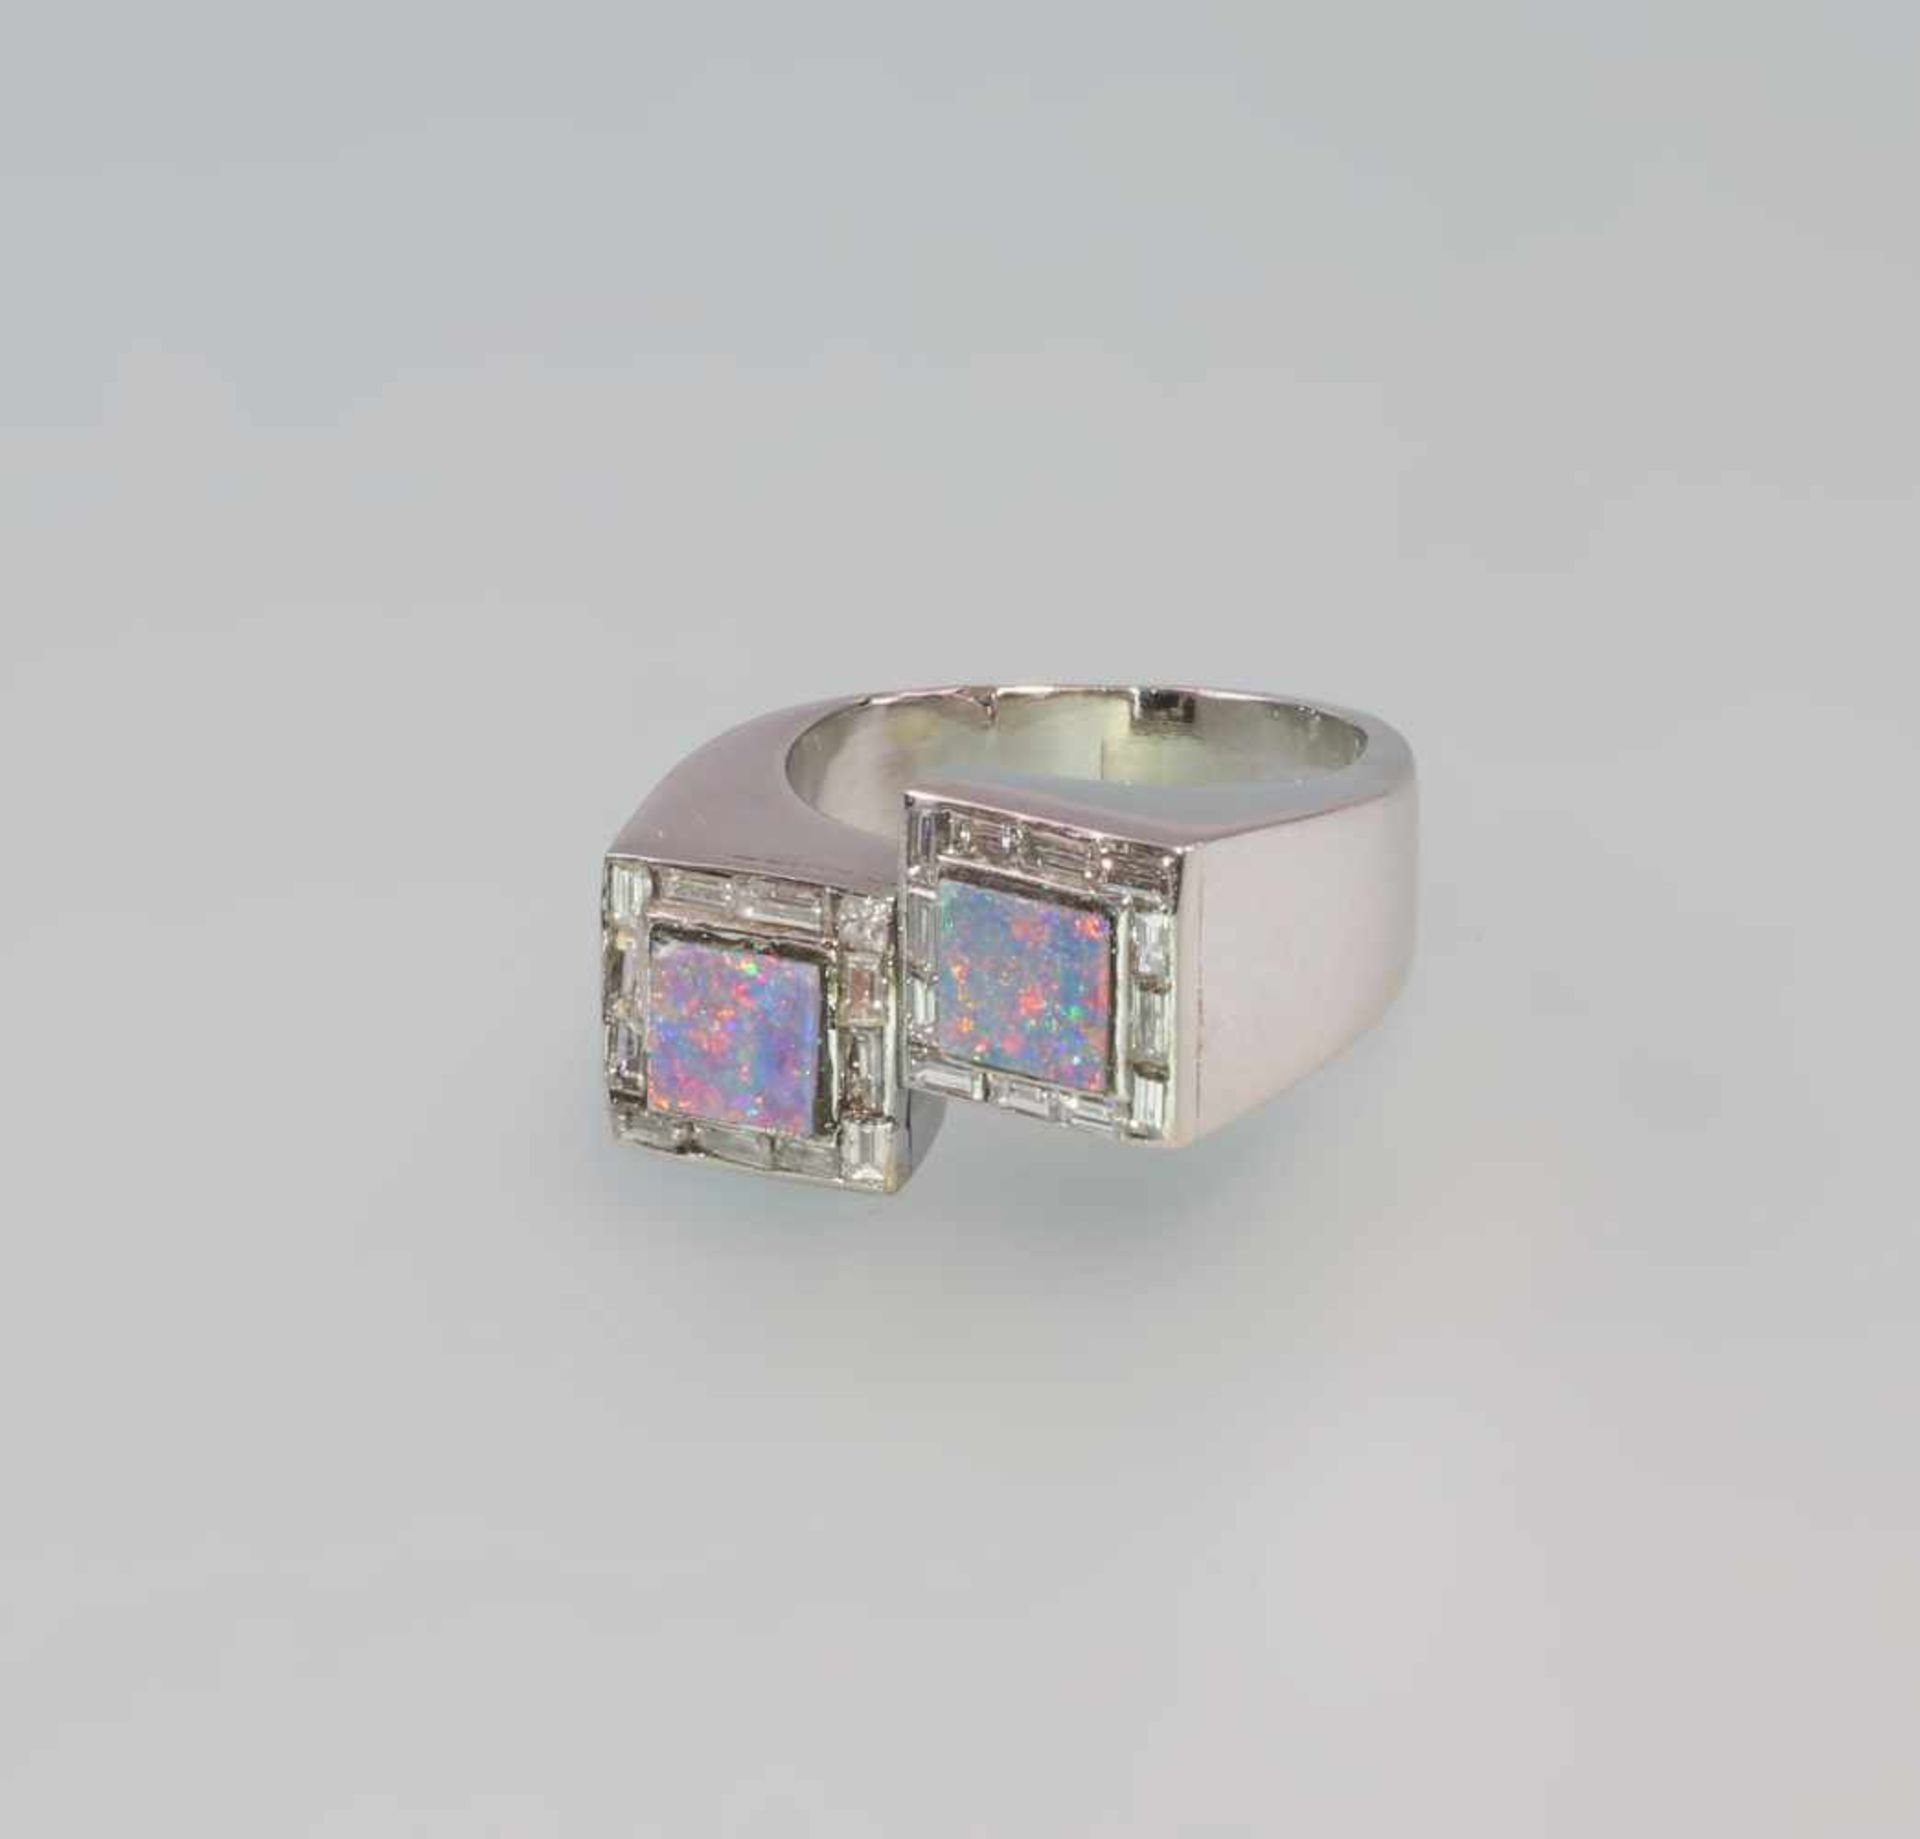 Diamant-Opal-Ring 950er Platin, 13,03 g, versetzte breite Ringschiene mit 2 quadratischen